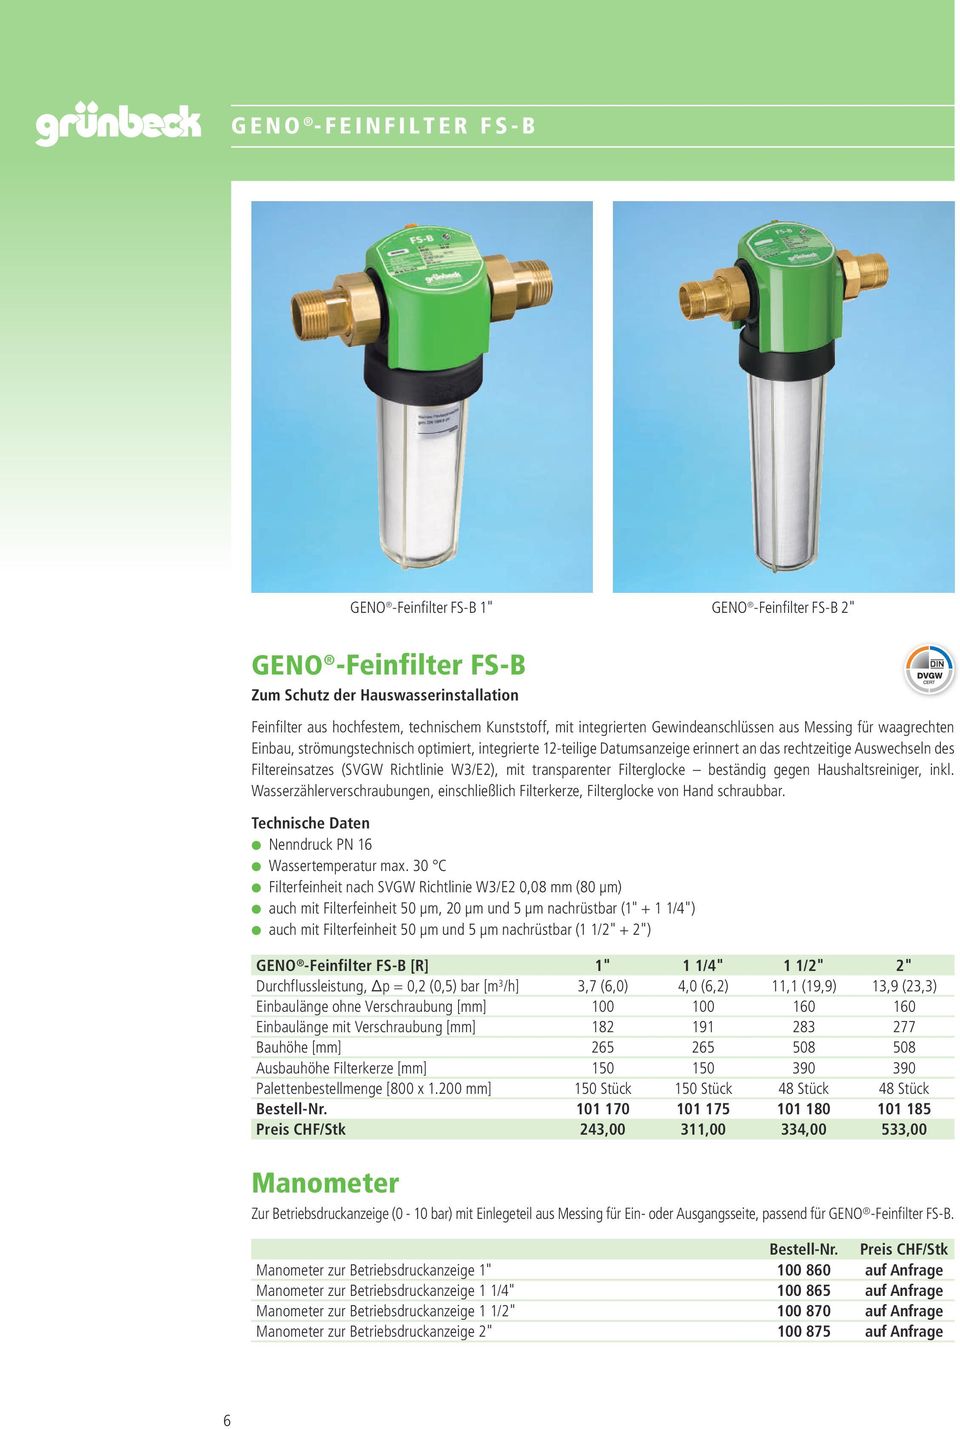 W3/E2), mit transparenter Filterglocke beständig gegen Haushaltsreiniger, inkl. Wasserzählerverschraubungen, einschließlich Filterkerze, Filterglocke von Hand schraubbar.